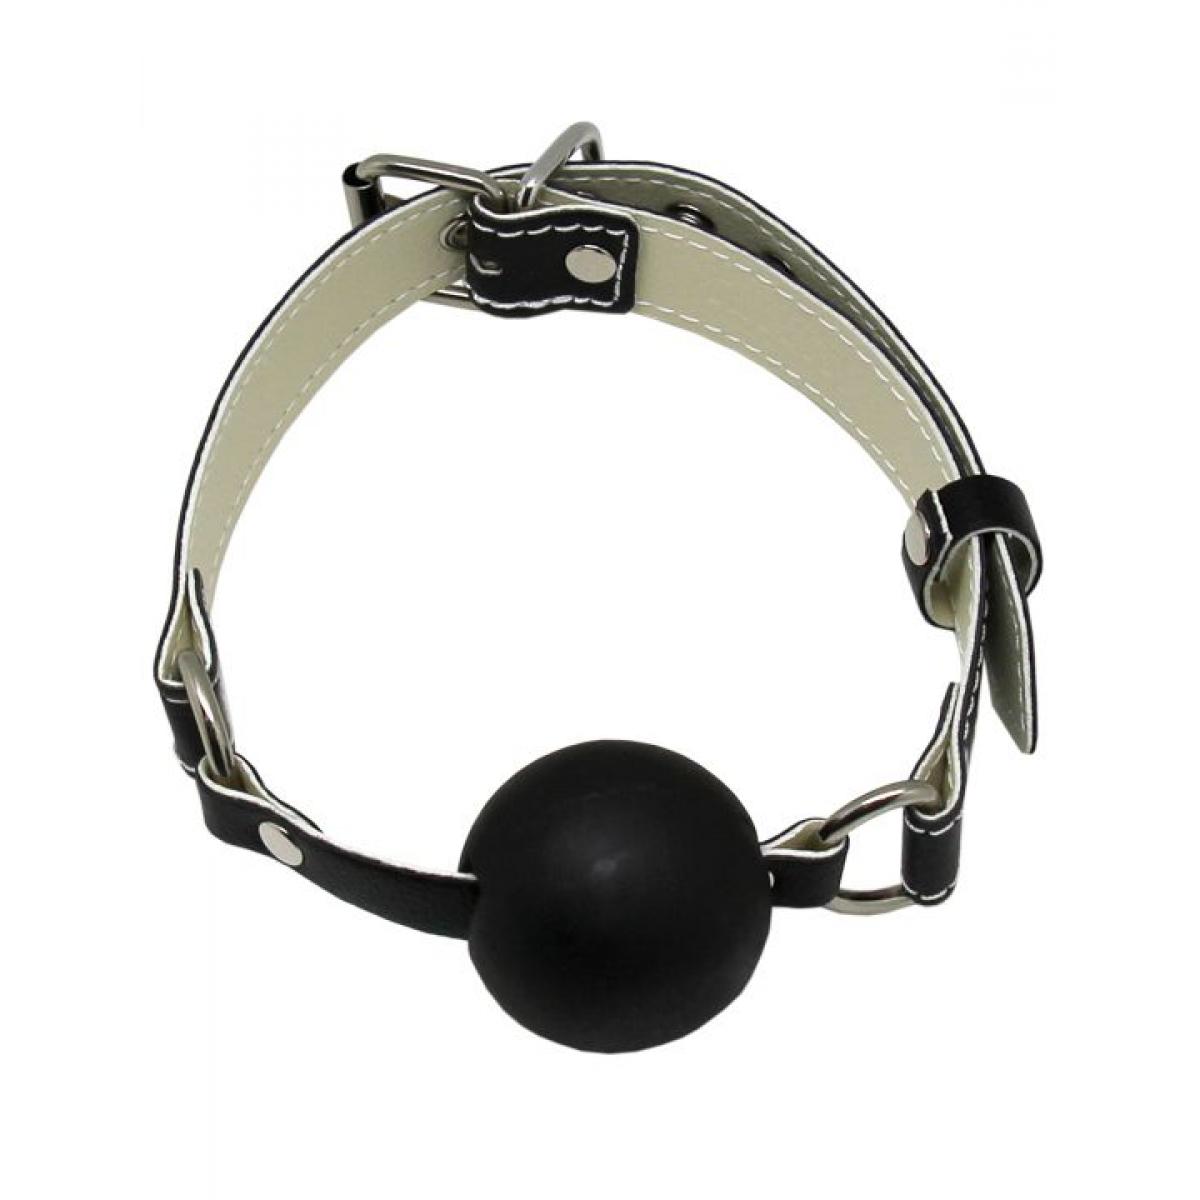 Пикантный БДСМ-набор на мягкой подкладке: наручники, поножи, ошейник с поводком, кляп